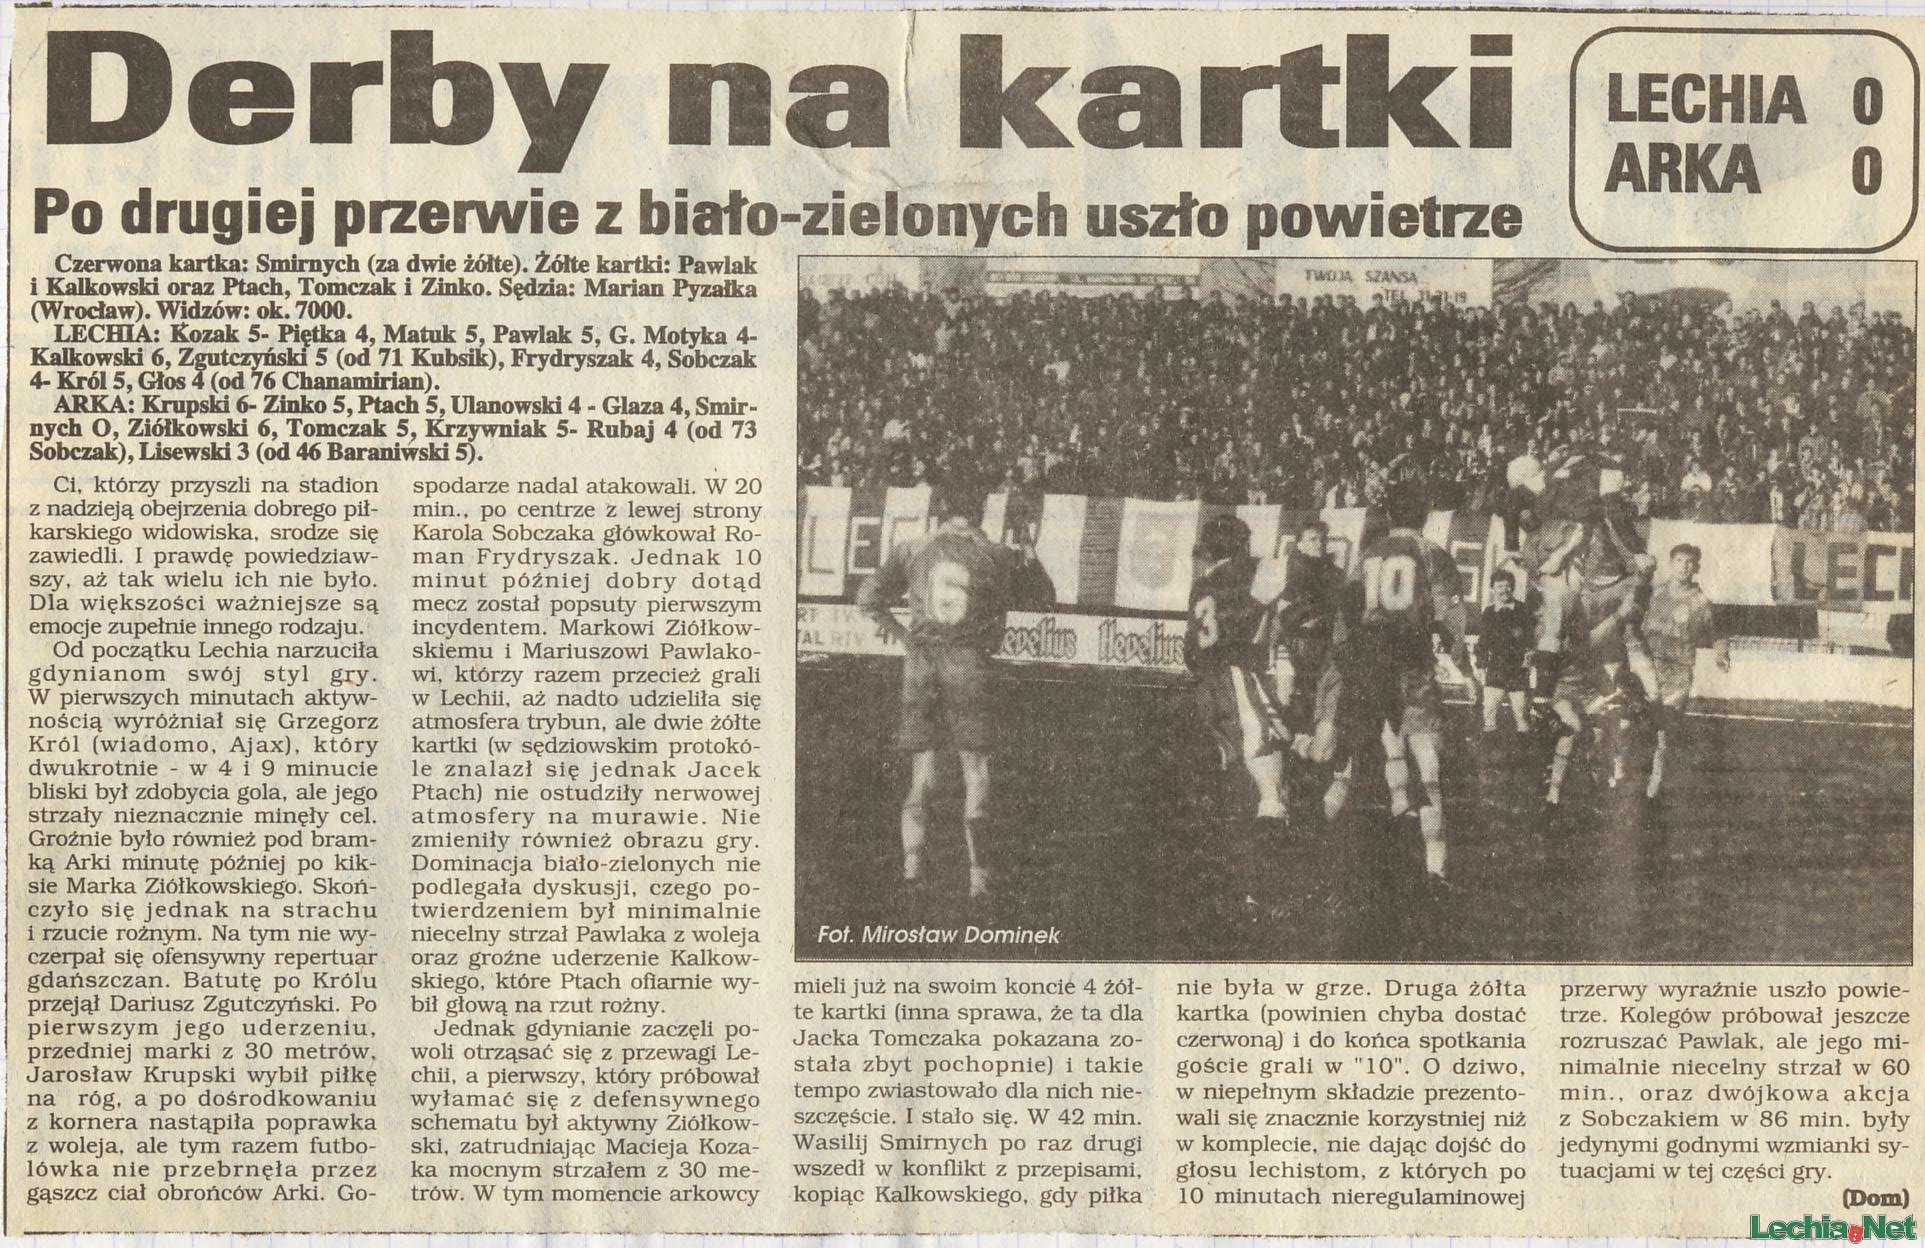 1995.04.01.derby na kartki